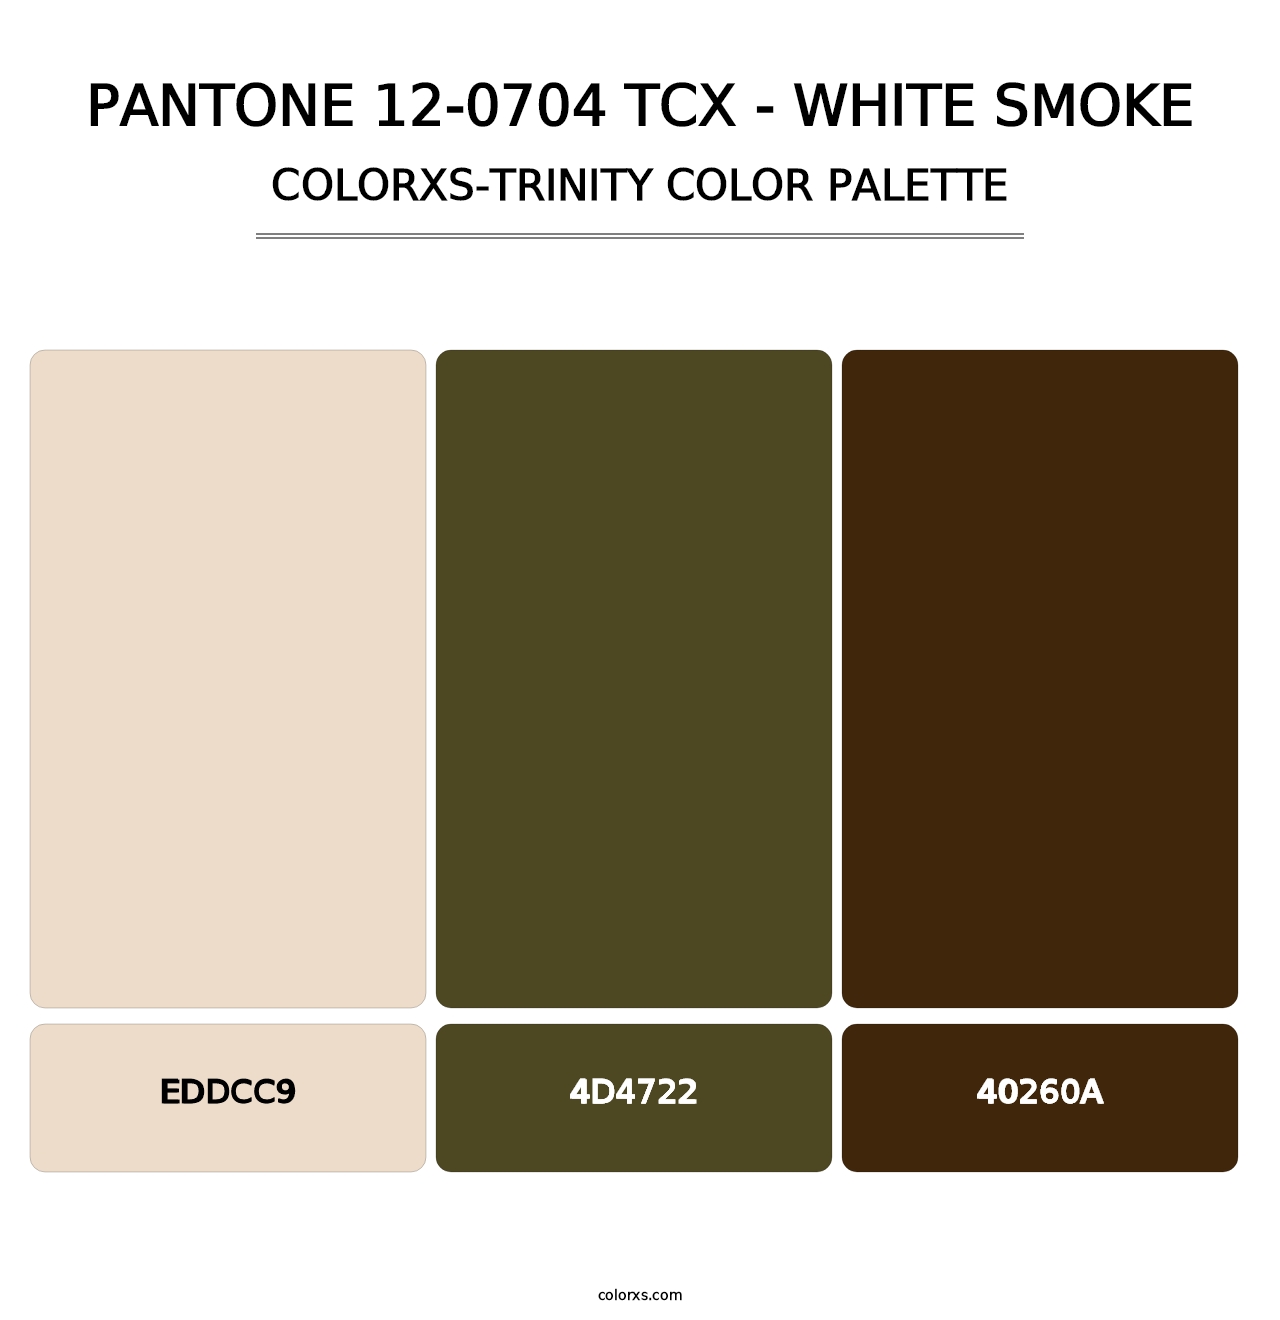 PANTONE 12-0704 TCX - White Smoke - Colorxs Trinity Palette